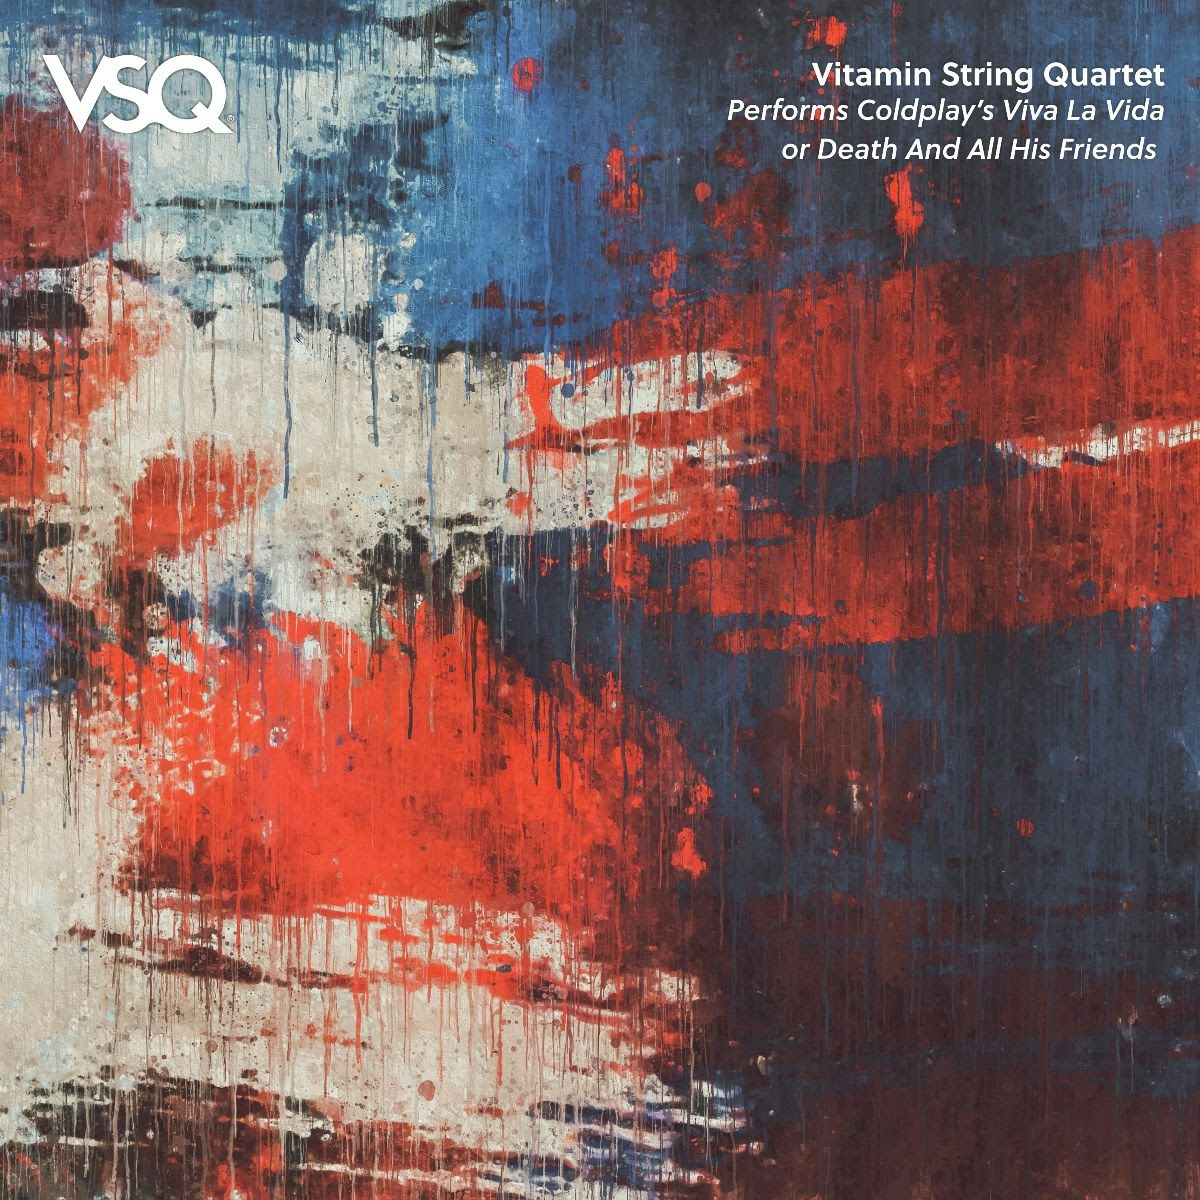 Album artwork for VSQ Performs Coldplay Viva la Vida by Vitamin String Quartet